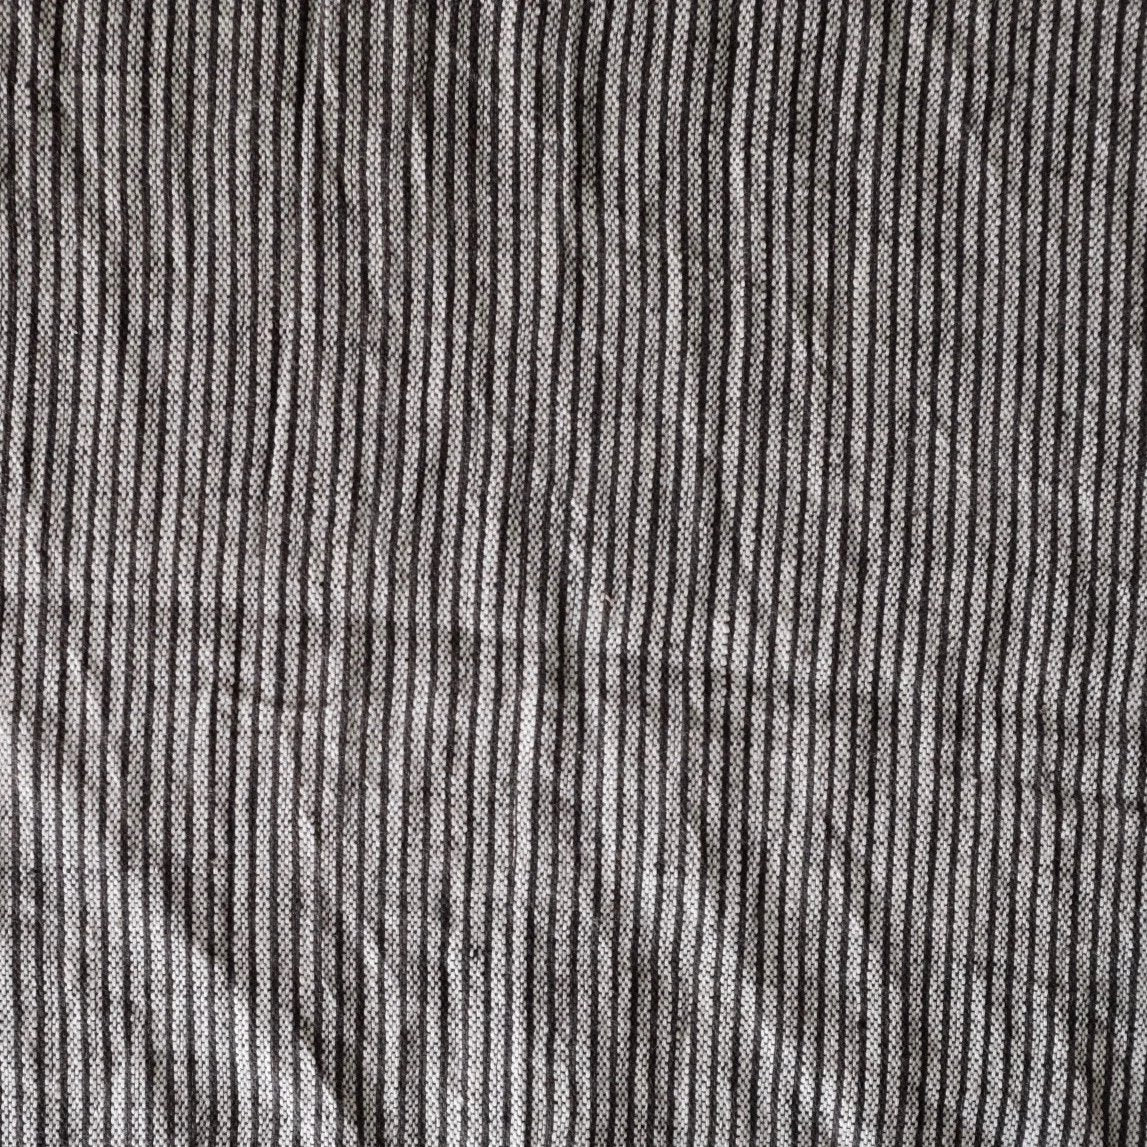 Label: Stripe - Version 2 - Black and White